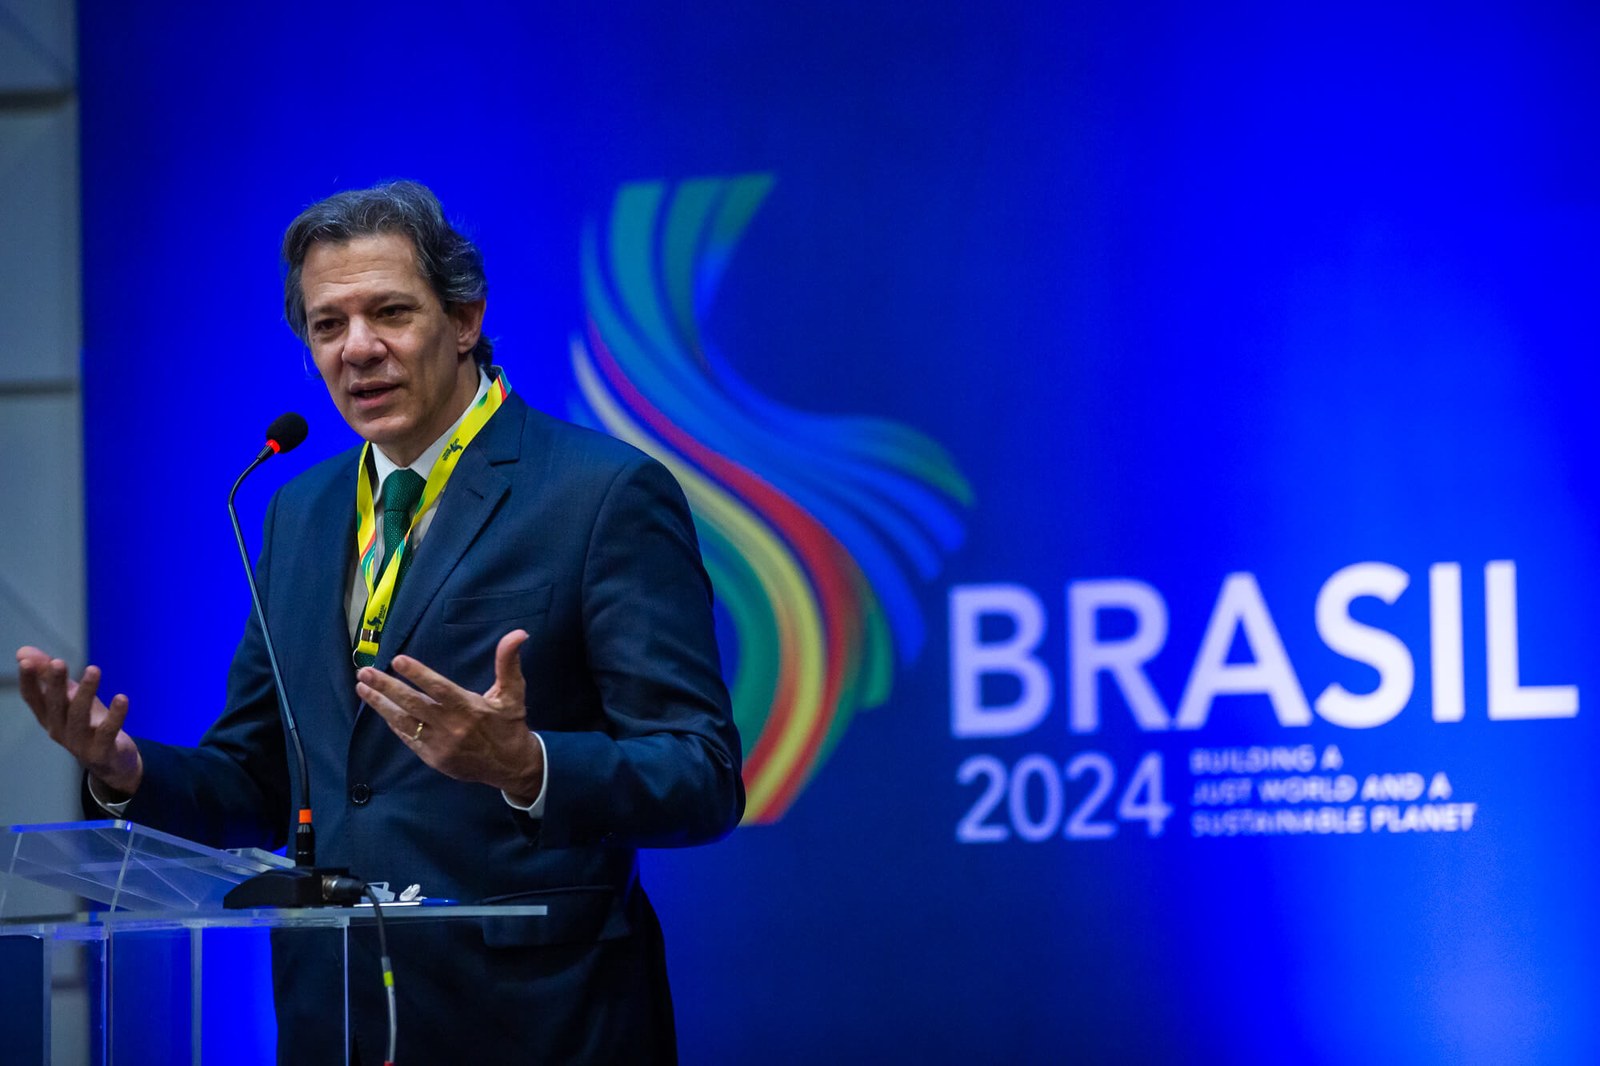 Ministro da Fazenda do Brasil, Fernando Haddad, ressaltou a importância do Brasil como modelo para mudanças estruturais e propostas de reformulação de instituições e práticas fiscais globais.